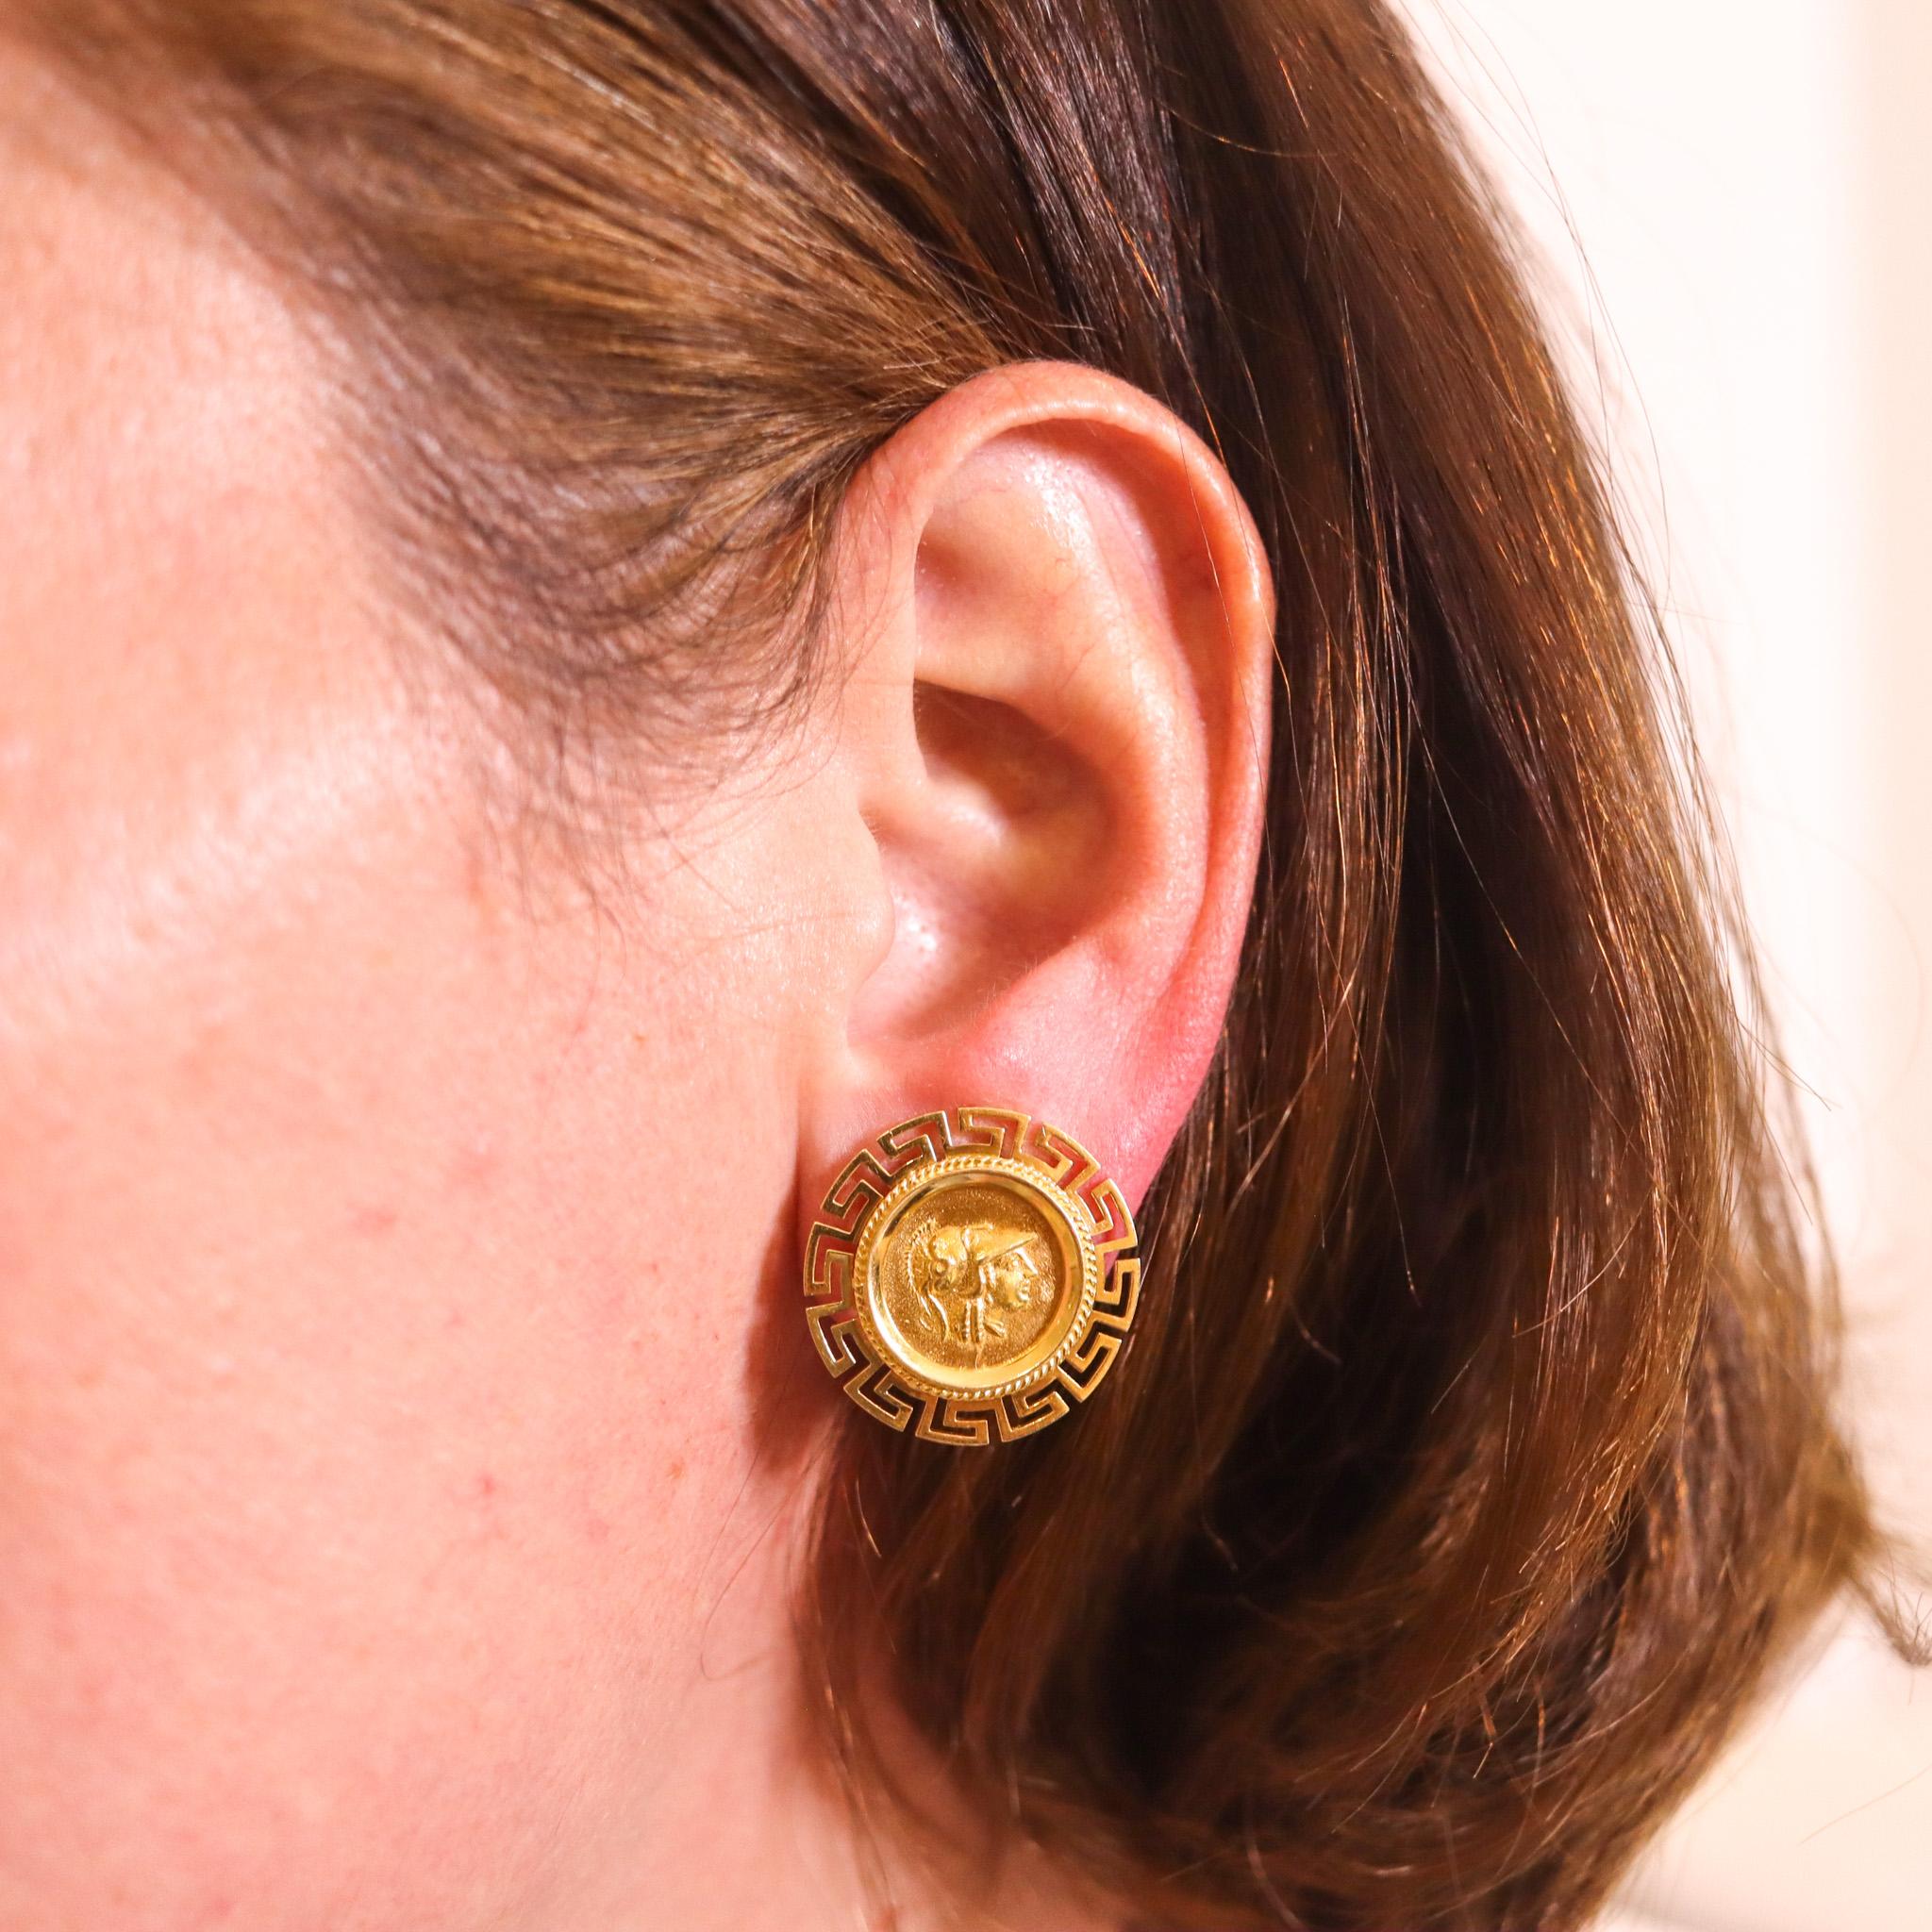 Ohrringe mit Goldmünzen im griechischen Stil.

Sehr schönes Paar klassischer Ohrringe mit griechischem Revival-Muster aus massivem 18-karätigem Gelbgold mit hochglanzpolierter Oberfläche. Sie sind mit zwei Goldmünzen verziert, die das Porträt von